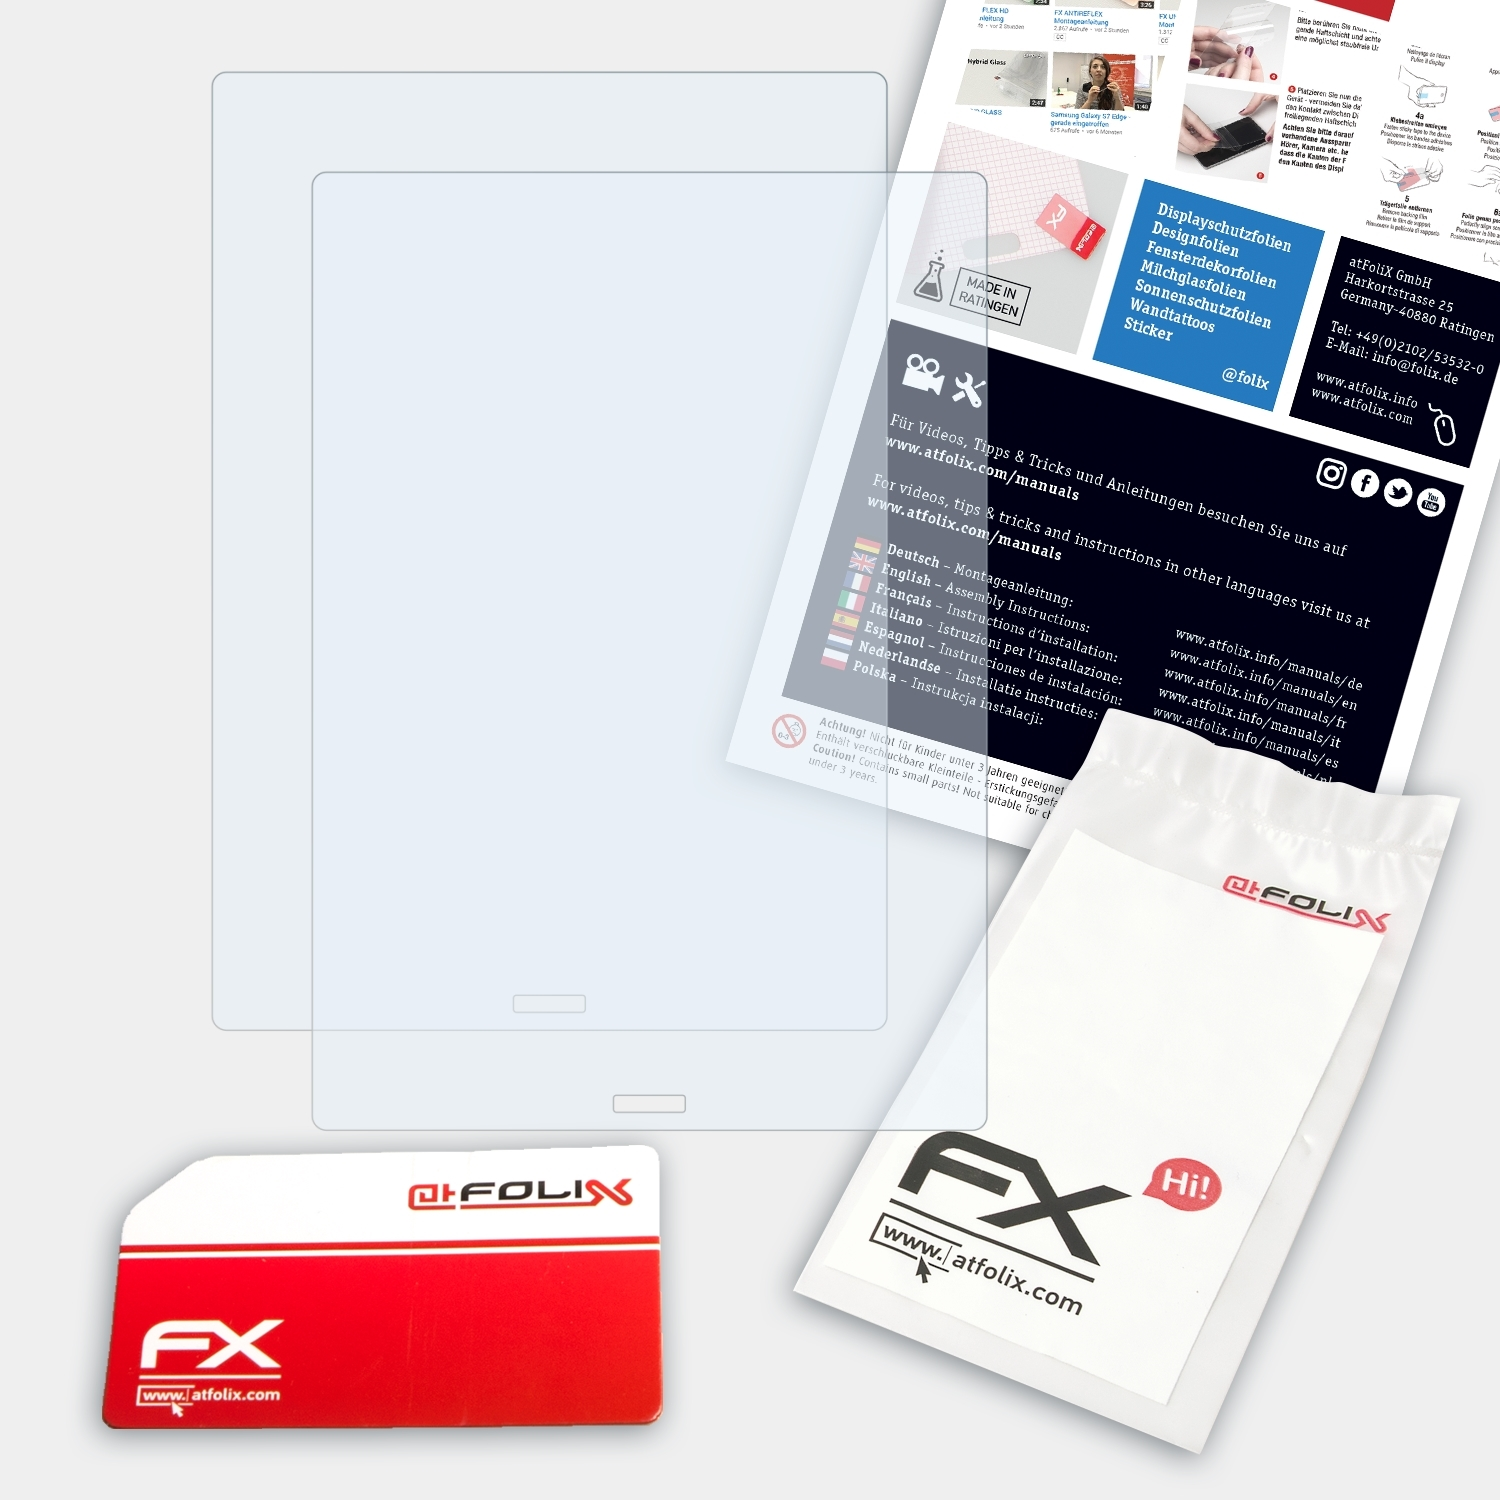 BOOX ATFOLIX Plus) 2x Displayschutz(für Note FX-Clear